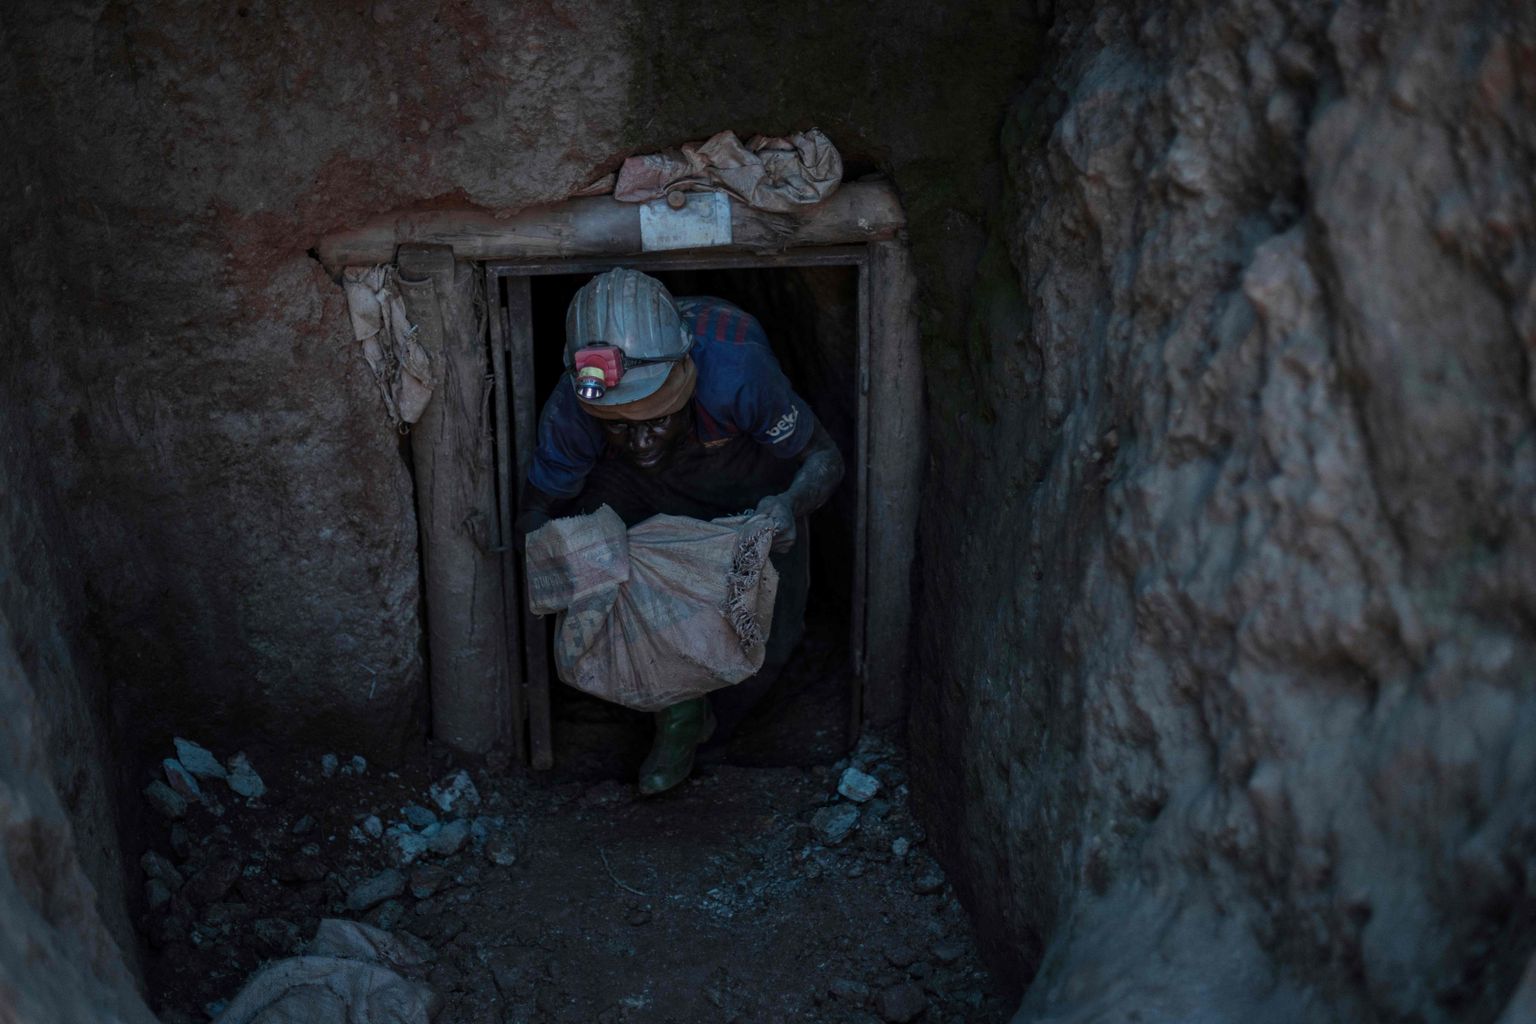 Kullakaevanduses töötaja Kongos Luhihis